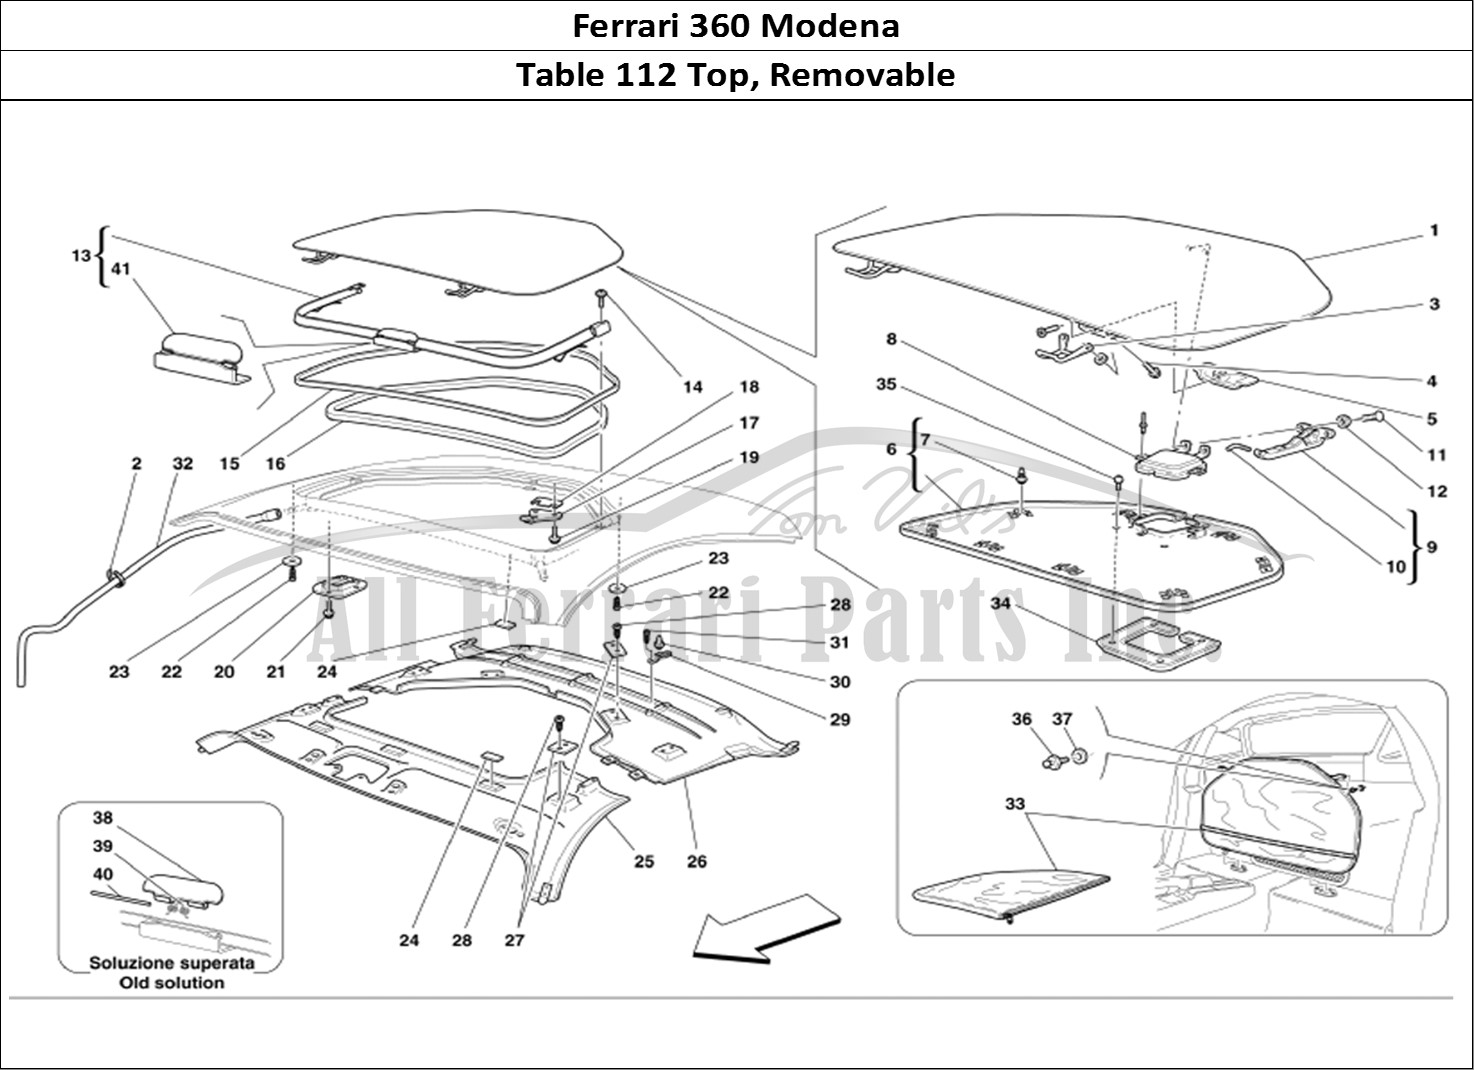 Ferrari Parts Ferrari 360 Modena Page 112 Removable Top